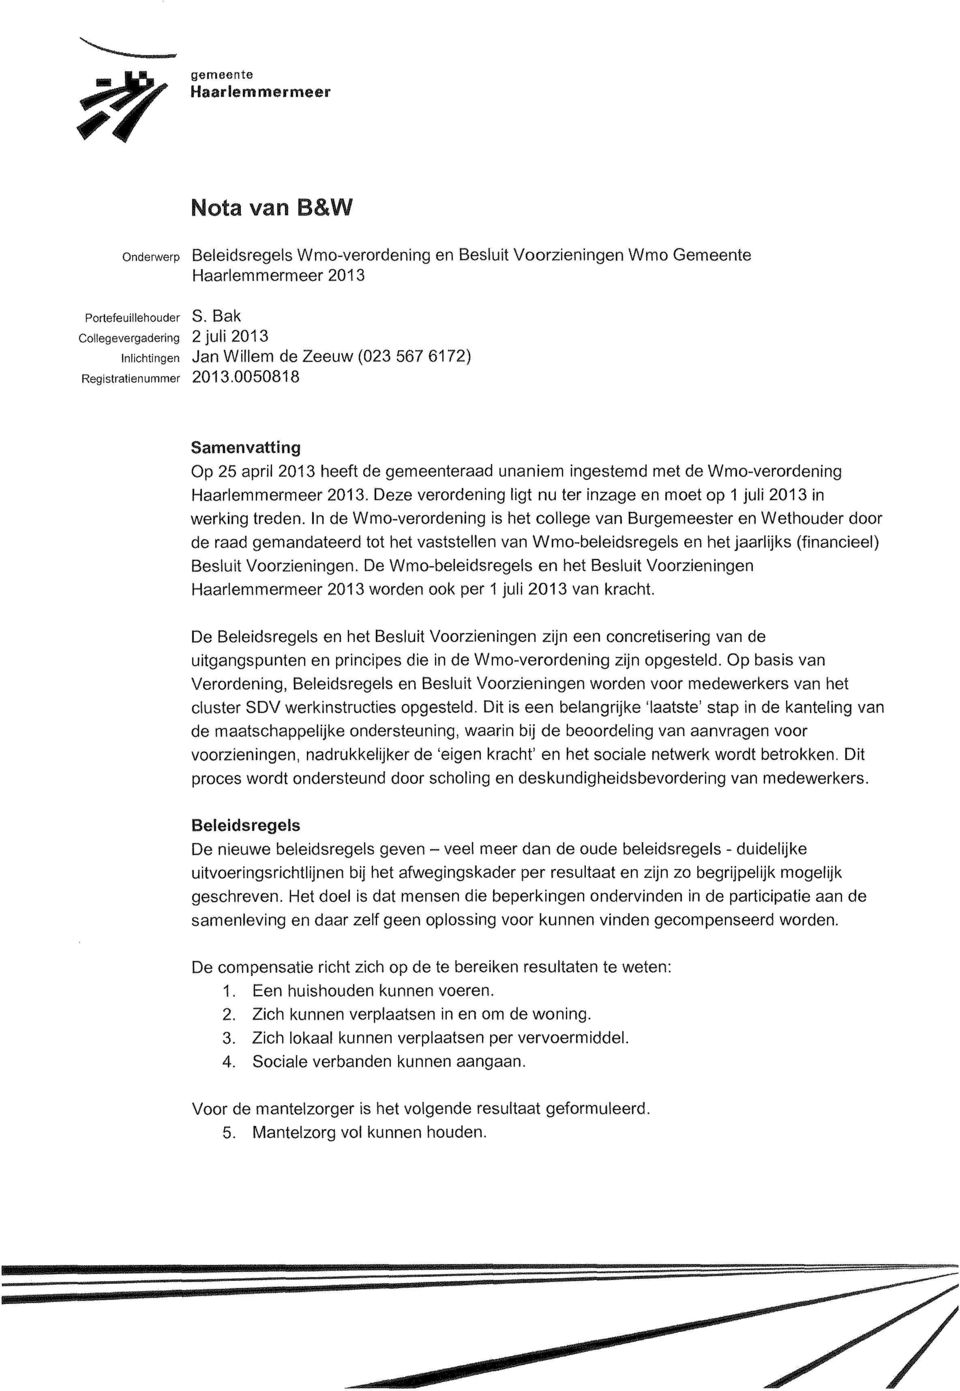 0050818 Samenvatting Op 25 april 2013 heeft de gemeenteraad unaniem ingestemd met de Wmo-verordening Haarlemmermeer 2013. Deze verordening ligt nu ter inzage en moet op 1 juli 2013 in werking treden.